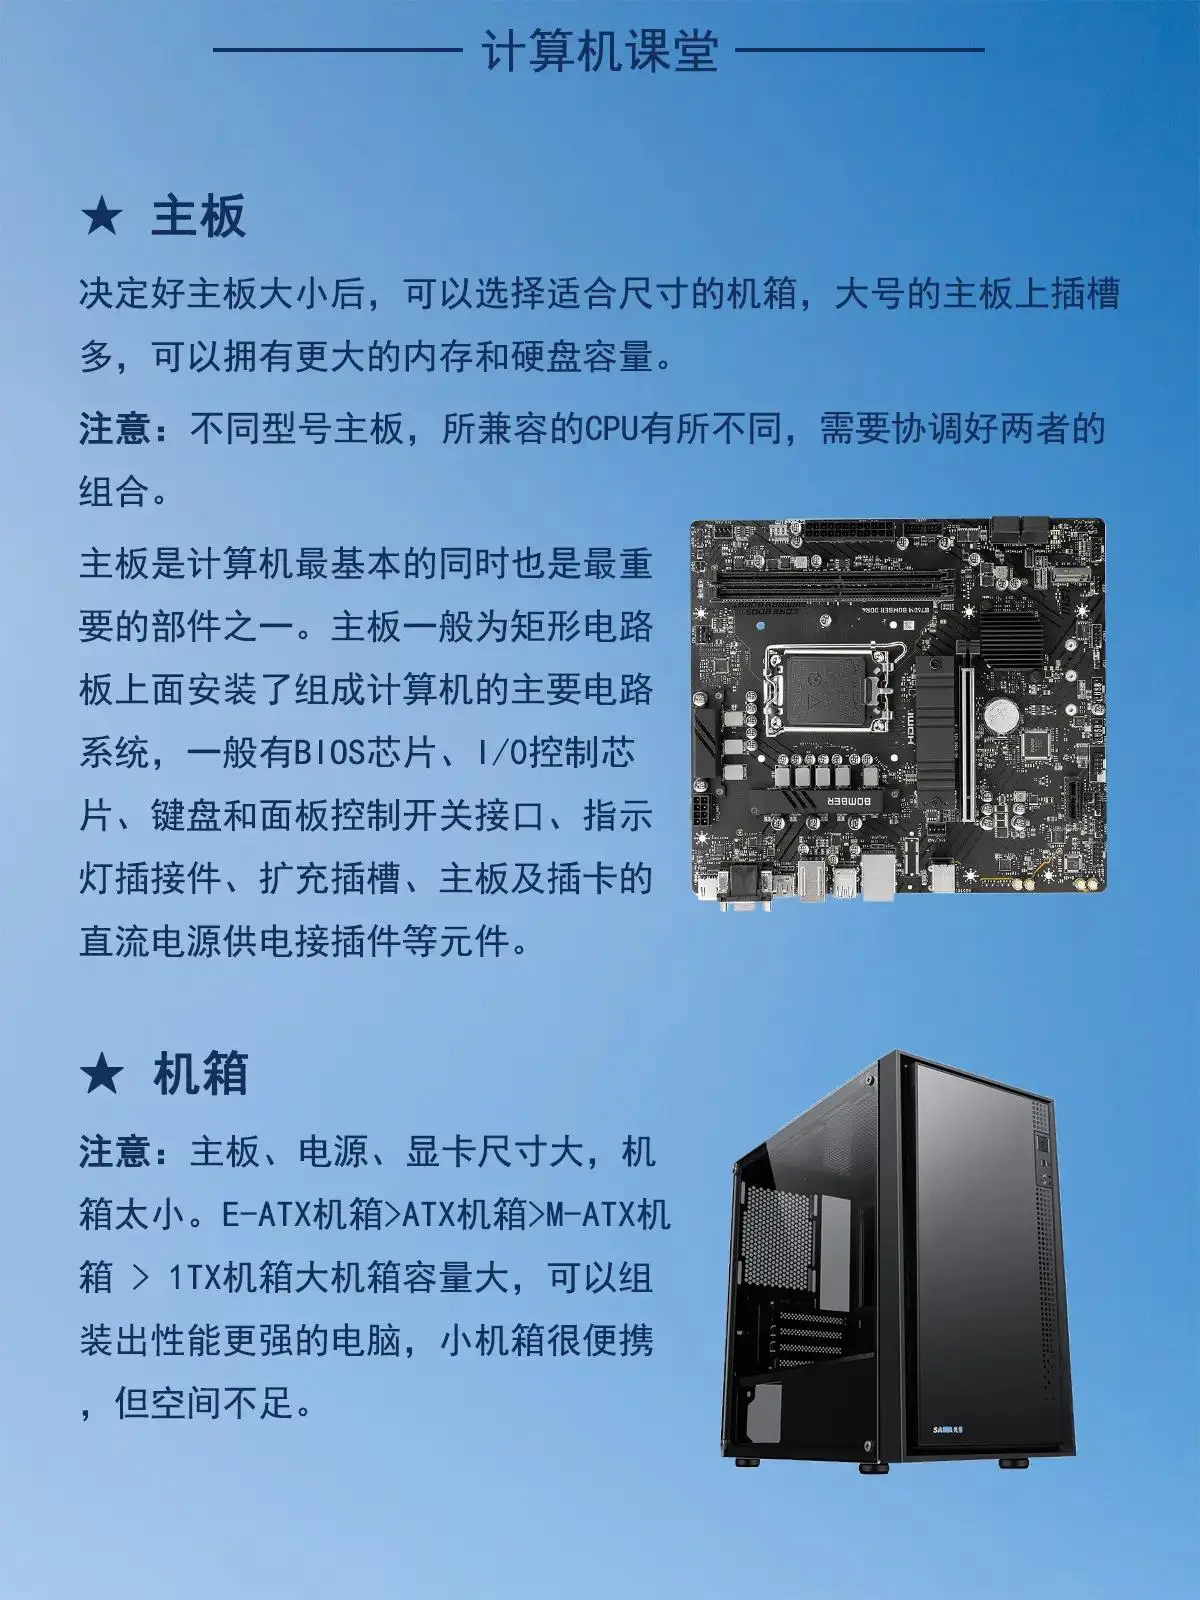 如何选择和搭配优质电脑硬件？关键在于CPU、内存和显卡的合理配置